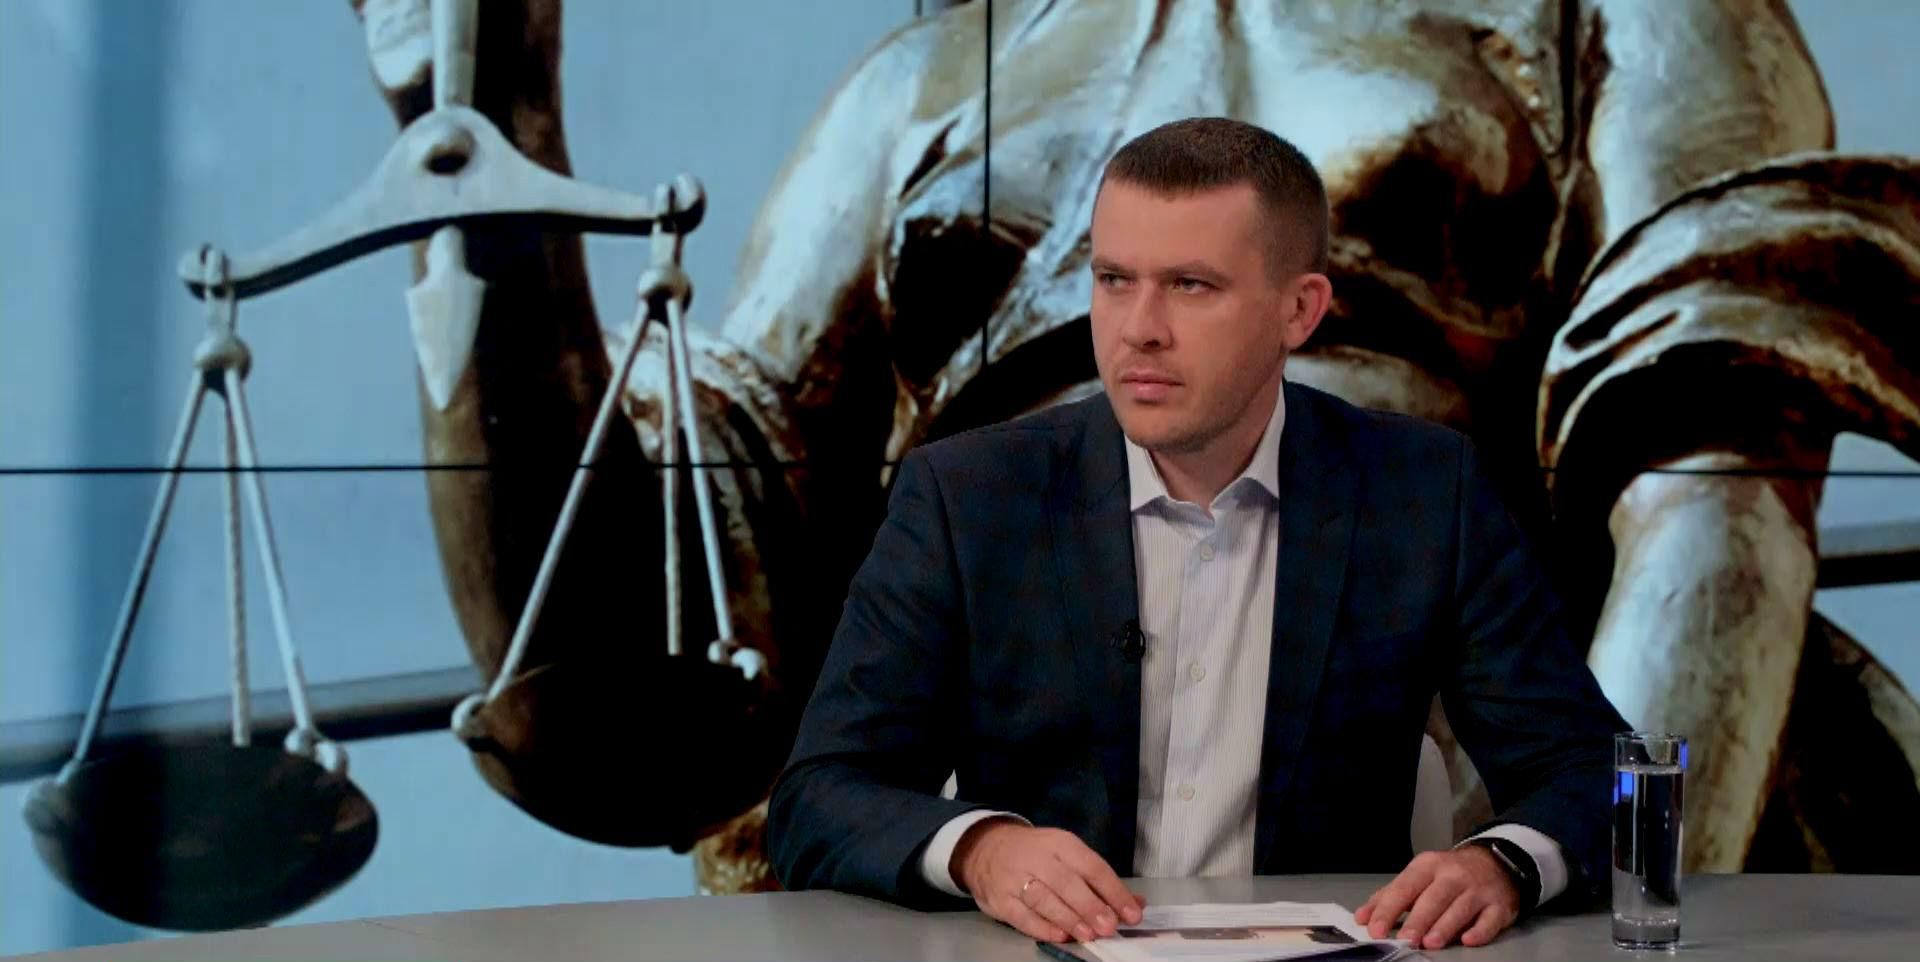 Савченко хотела давать показания в суде под полиграф, но ей отказали, — депутат